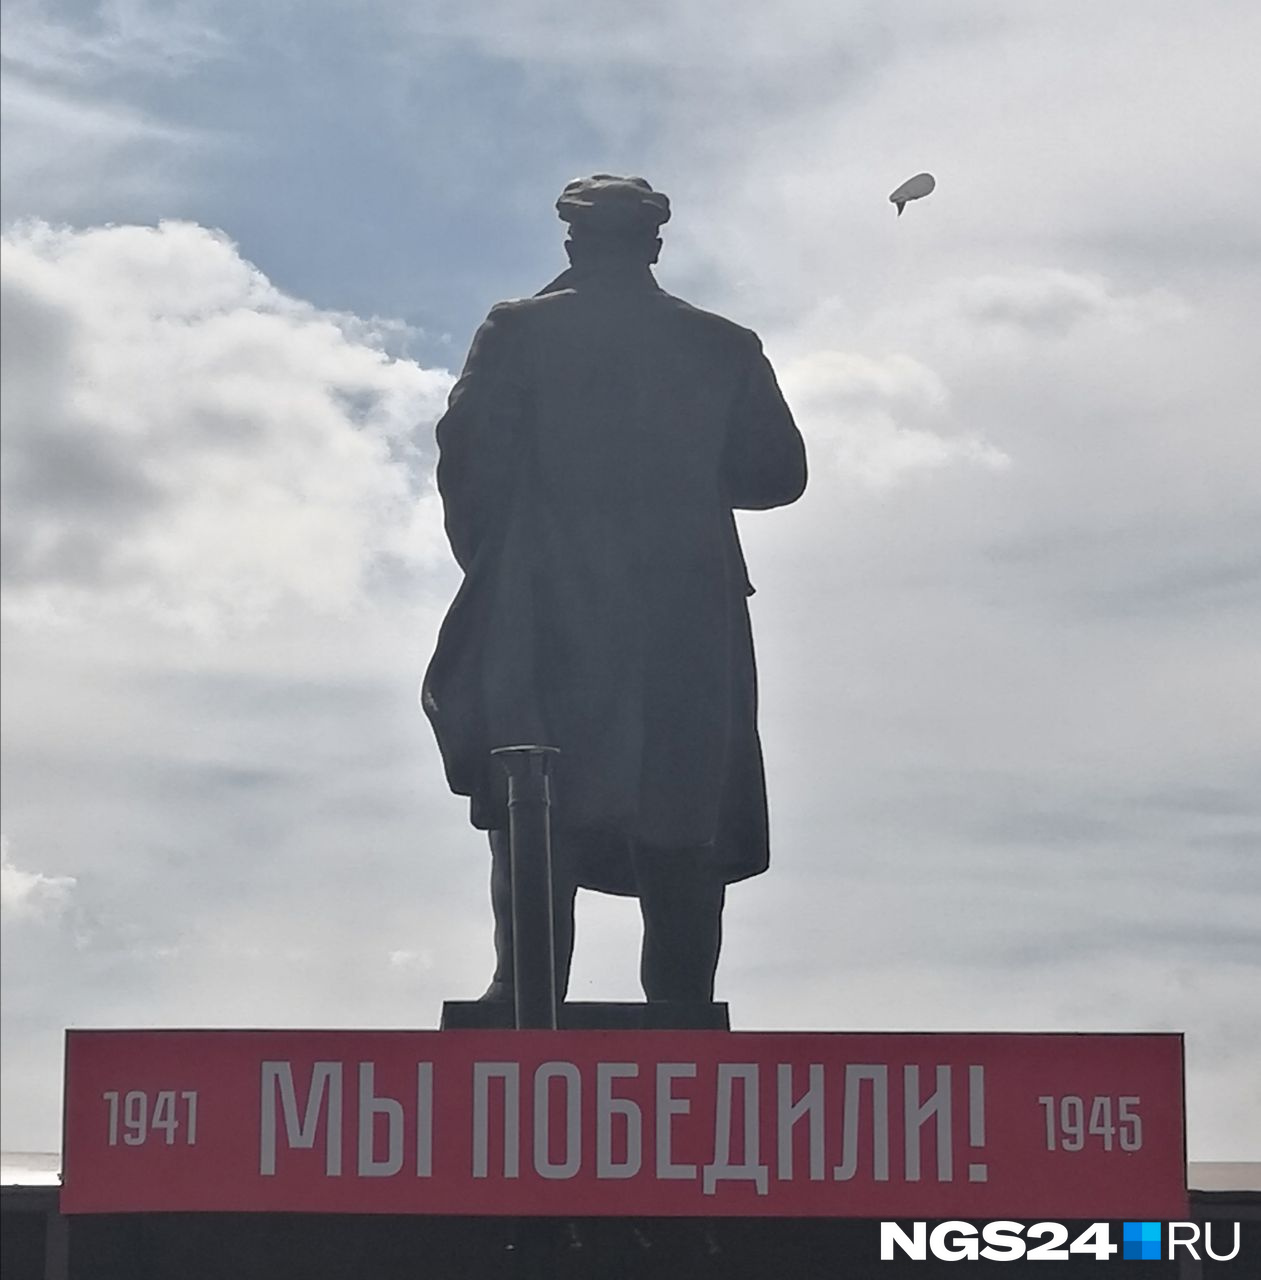 Вождь революции Владимир Ильич следит за парадом со своего постамента. А за ним бдит зоркое око с дирижабля, парящего над городом 